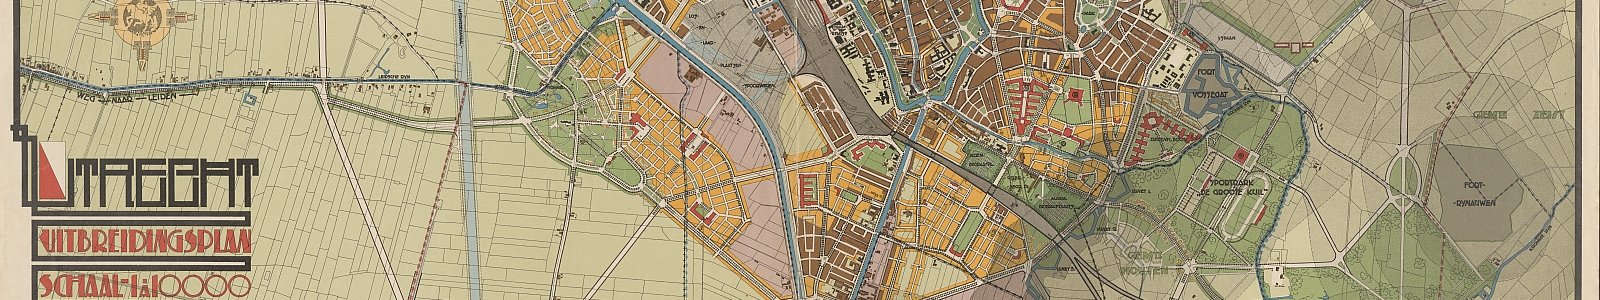 Detail uitbreidingsplan van Utrecht, 1920